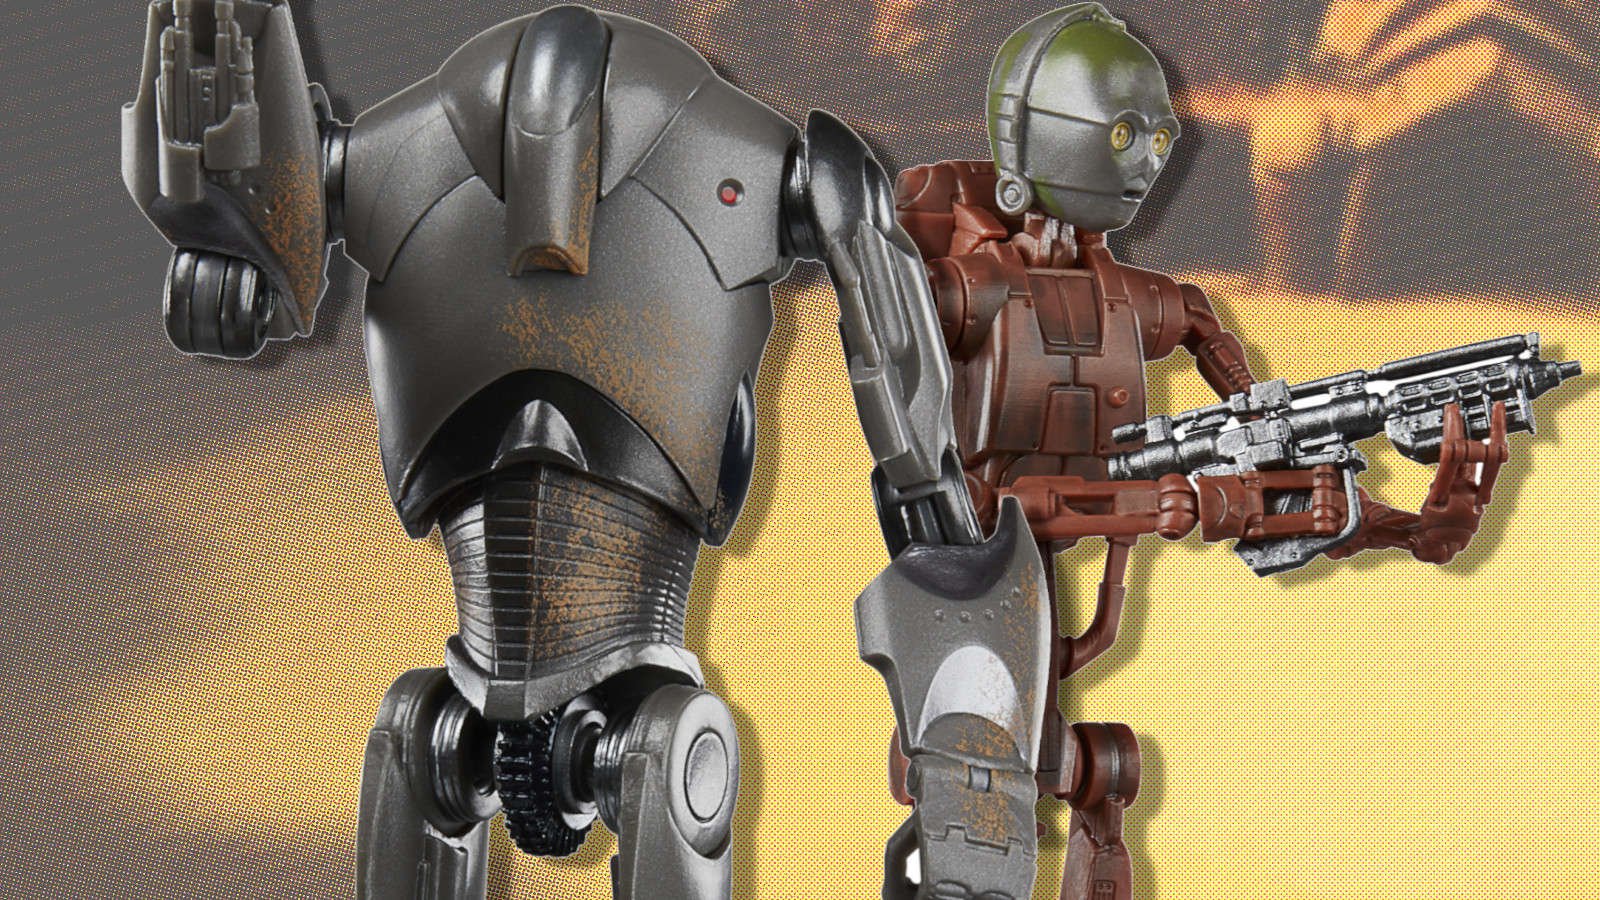 Star Wars Black Series C-C3P0 (Battle Droid Body) and Super Battle Droid Figures